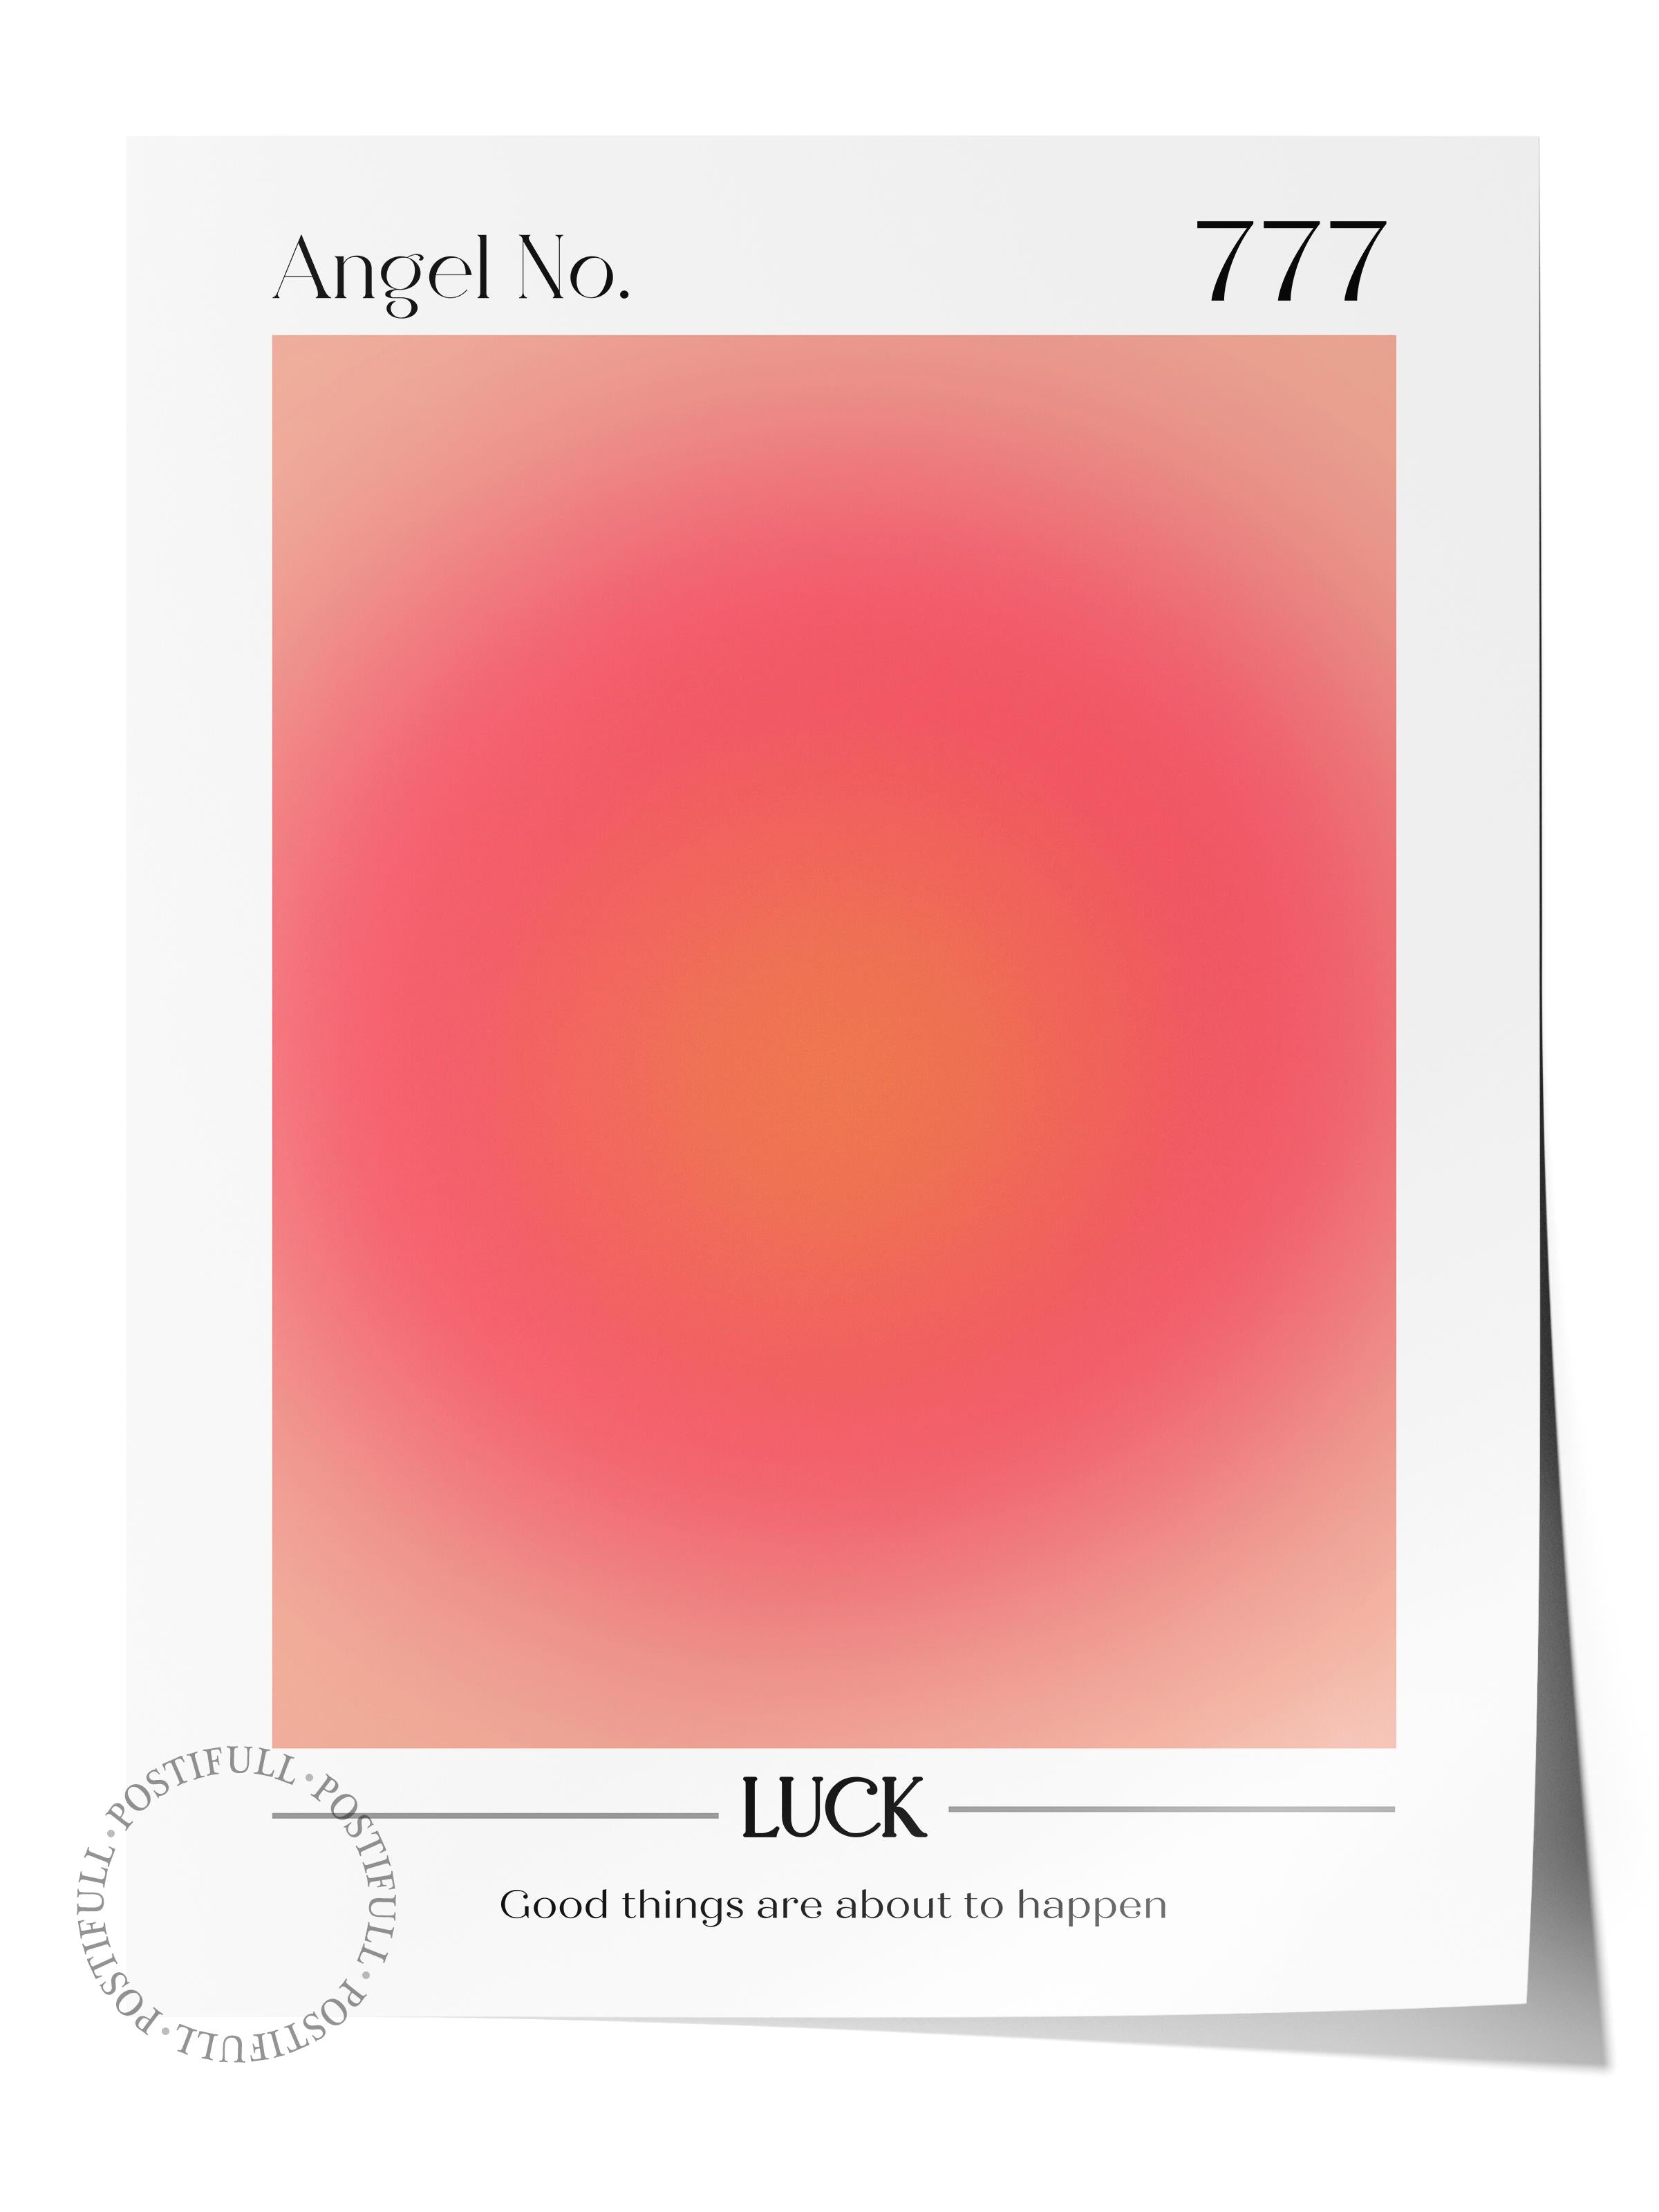 Çerçevesiz Poster, Aura Serisi NO:42 - 777 - Luck Pastel Kırmızı, Melek Numaraları, Renkli Poster